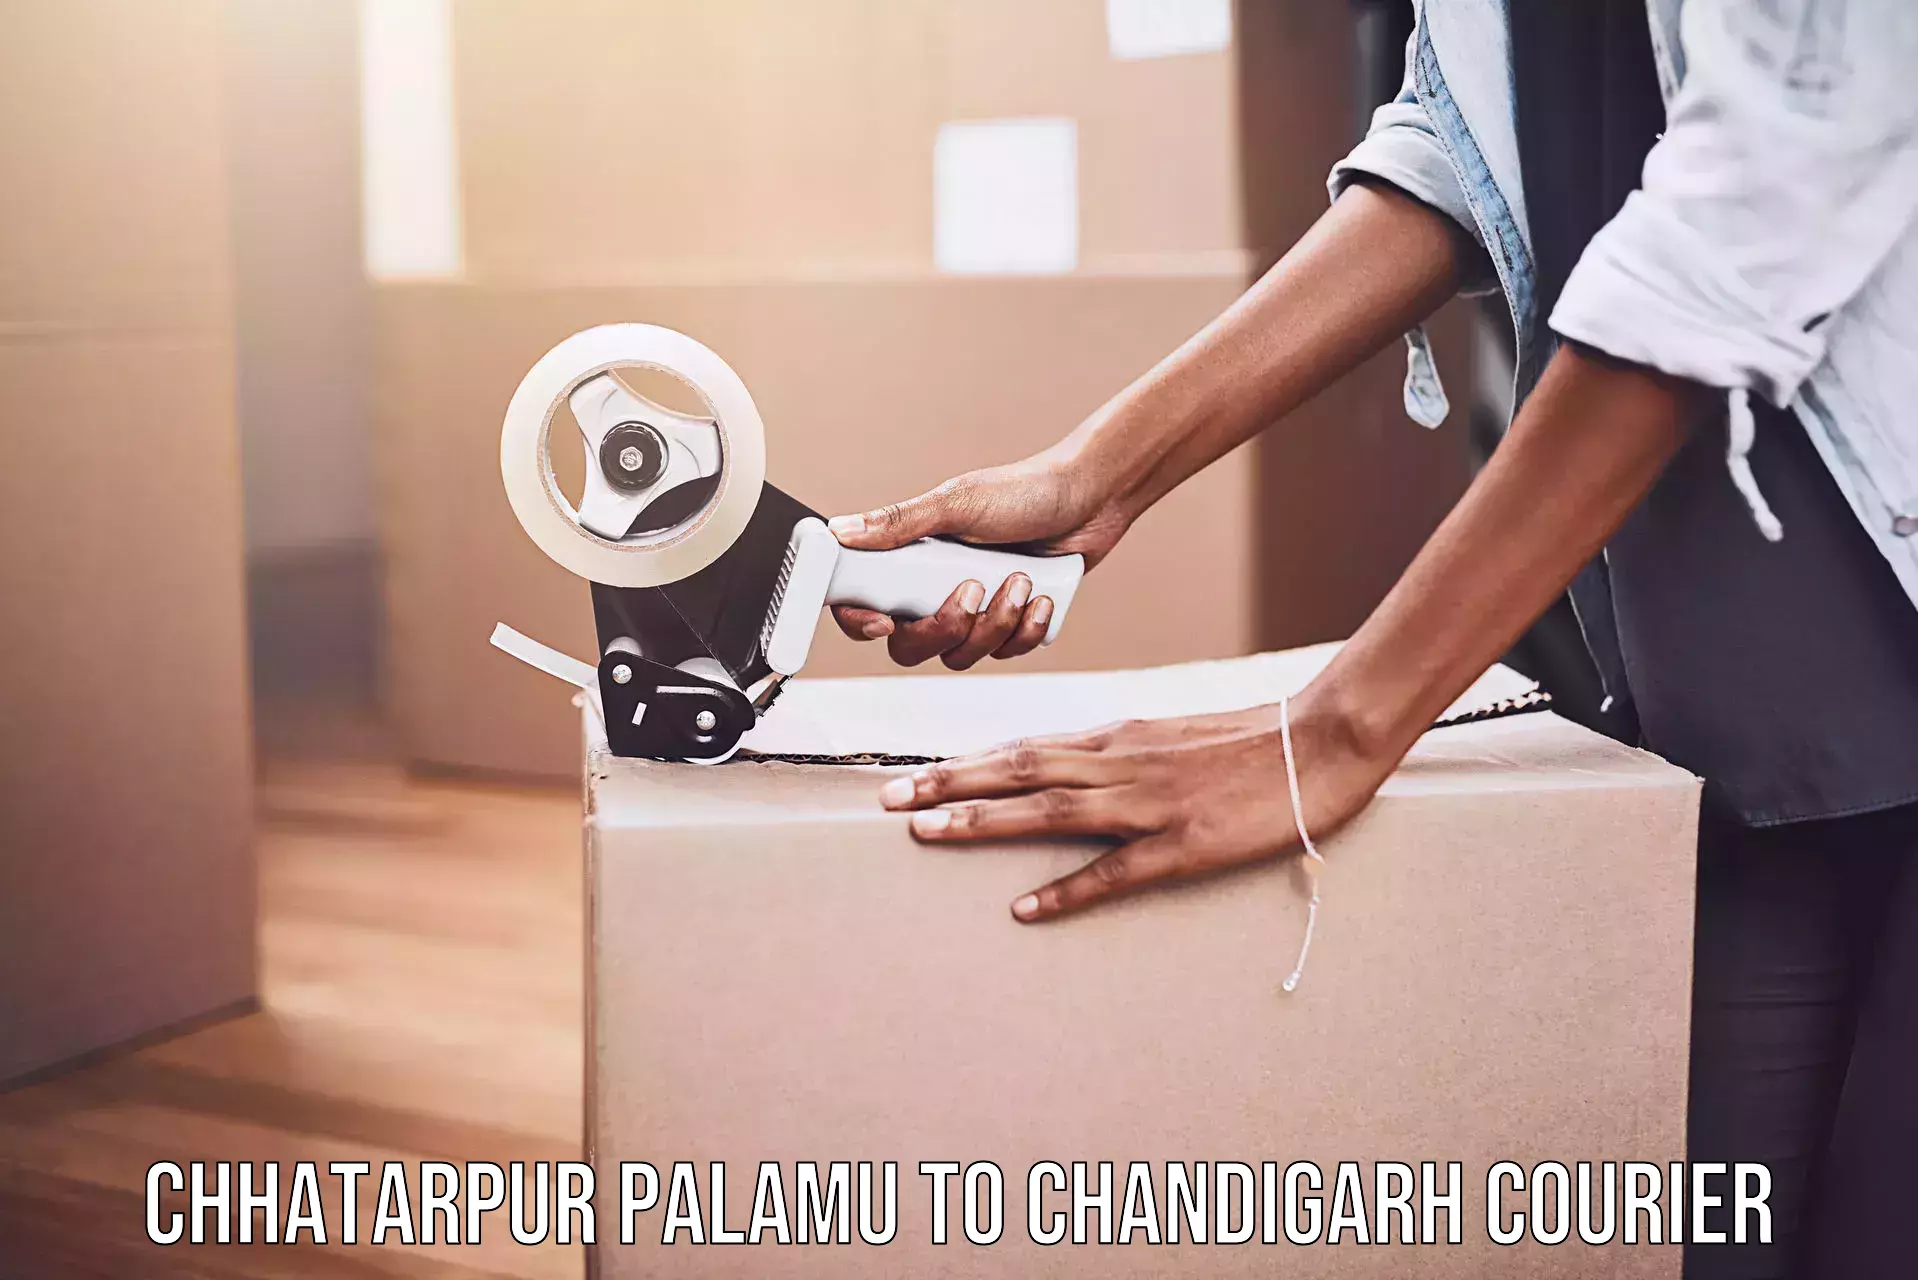 Urgent courier needs Chhatarpur Palamu to Chandigarh